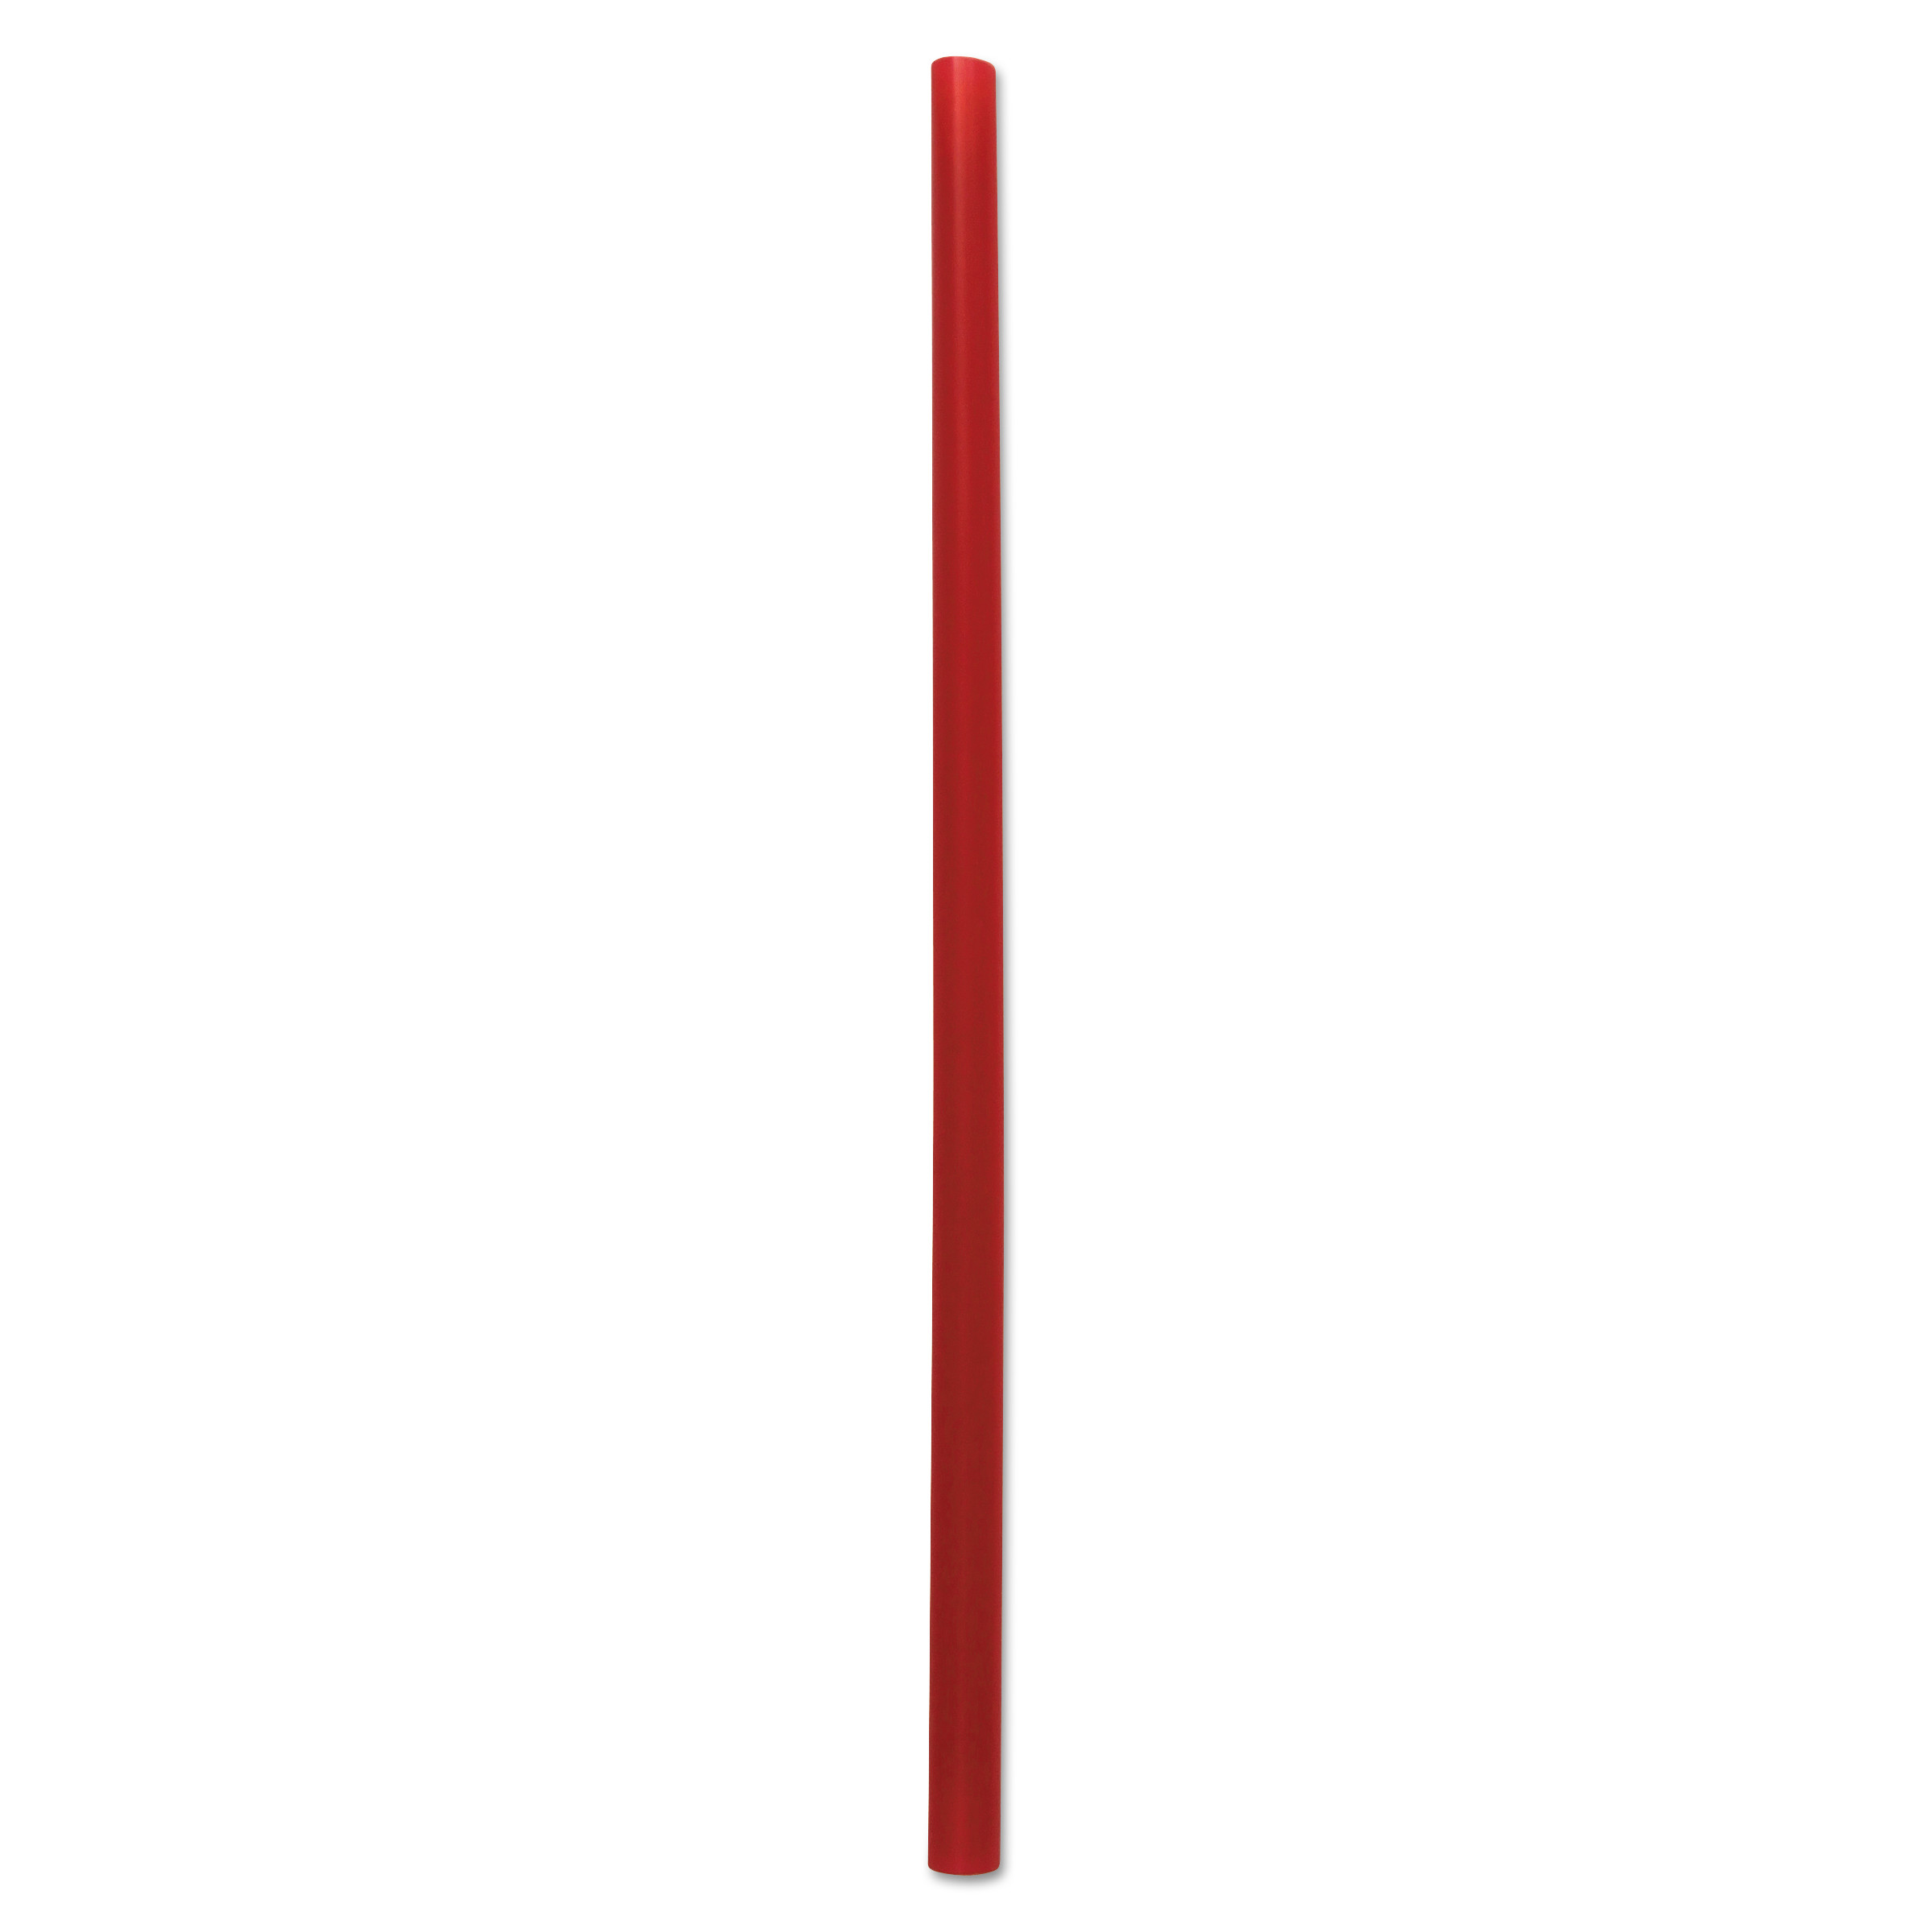  Boardwalk BWKGSTU775R Giant Straws, 7 3/4, Red, 1500/Carton (BWKGSTU775R) 